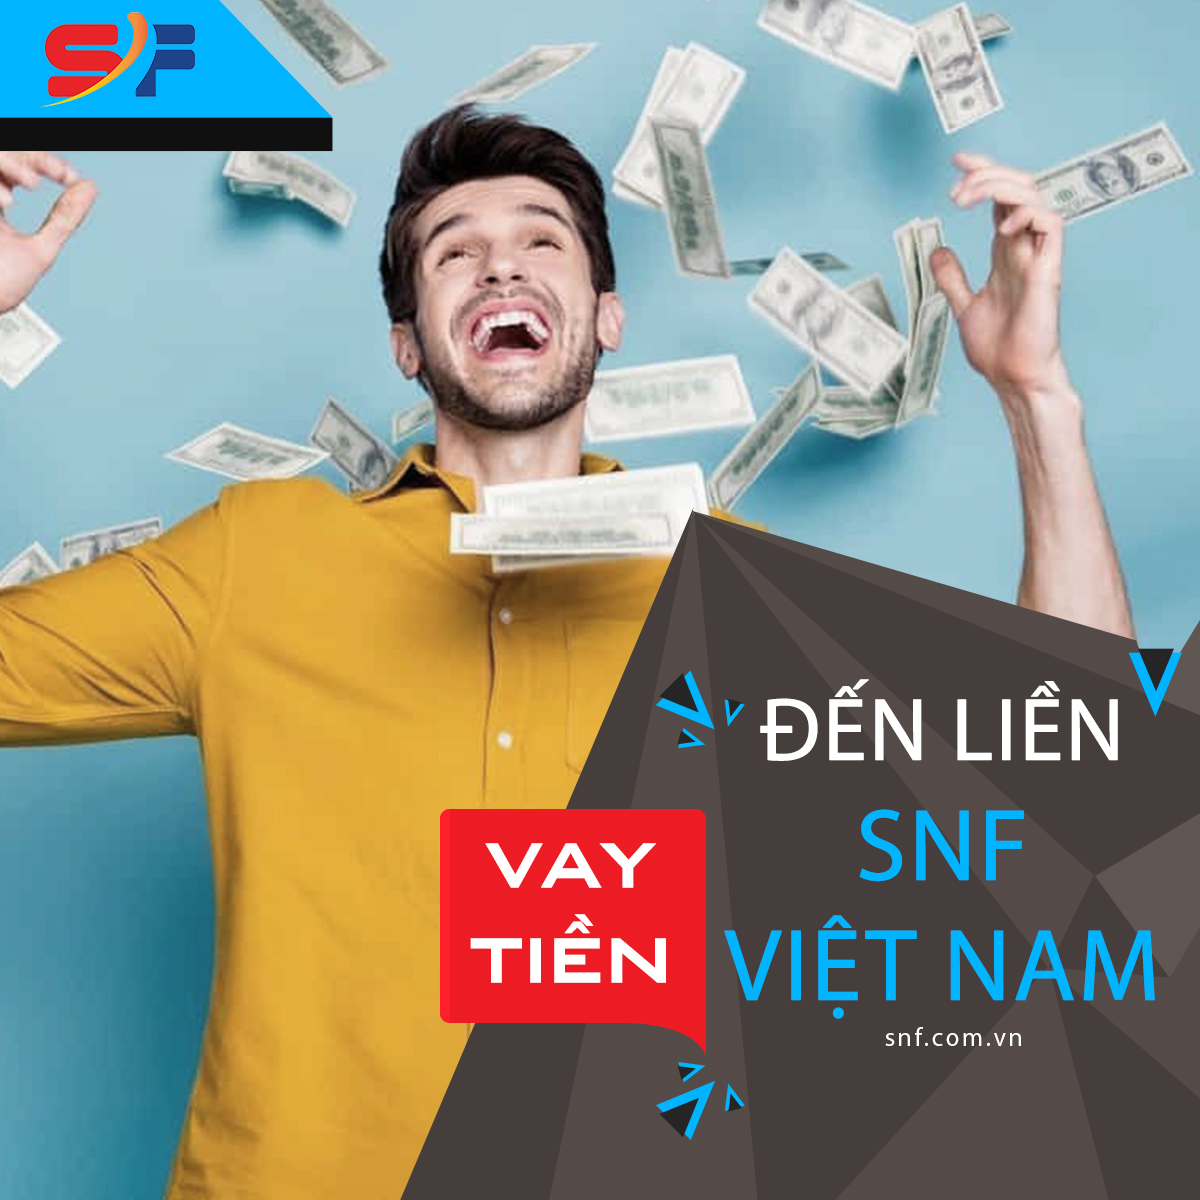 Địa chỉ vay tiền sinh viên uy tín hàng đầu Việt Nam